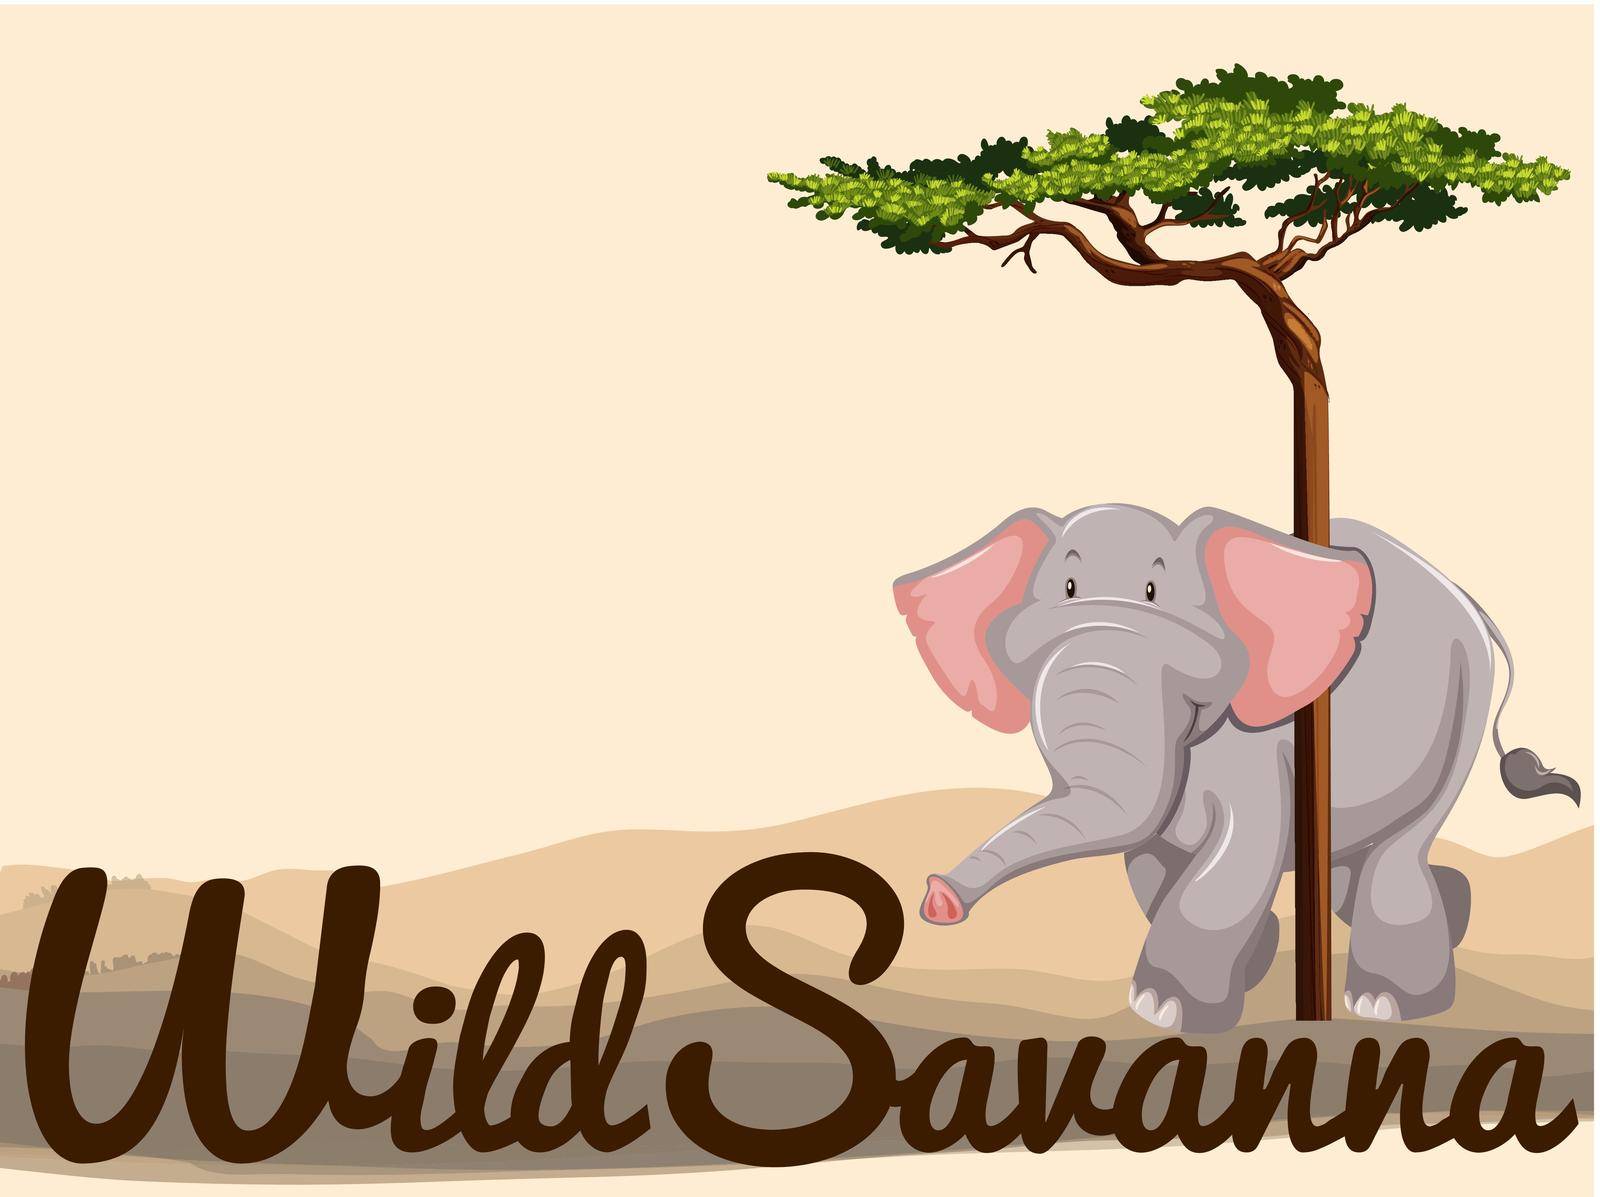 Wild elephant in savanna illustration